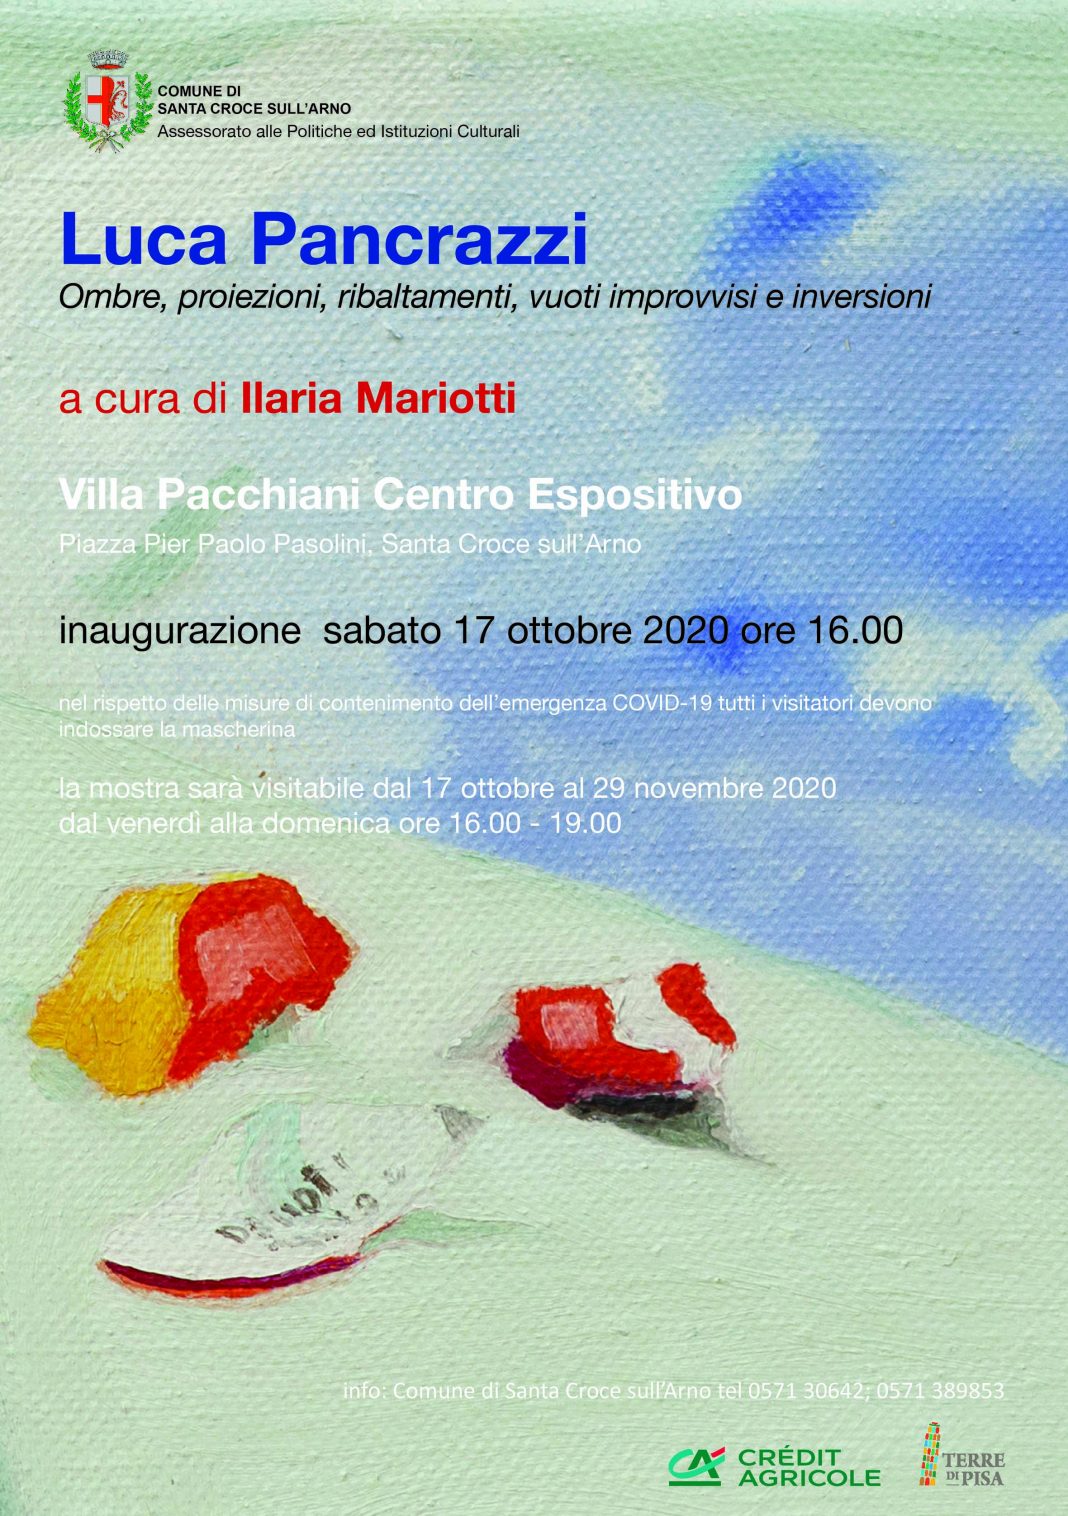 Luca Pancrazi – Ombre, proiezioni, ribaltamenti, vuoti improvvisi e inversionihttps://www.exibart.com/repository/media/formidable/11/Locandina-Pancrazzilegg-1068x1516.jpg